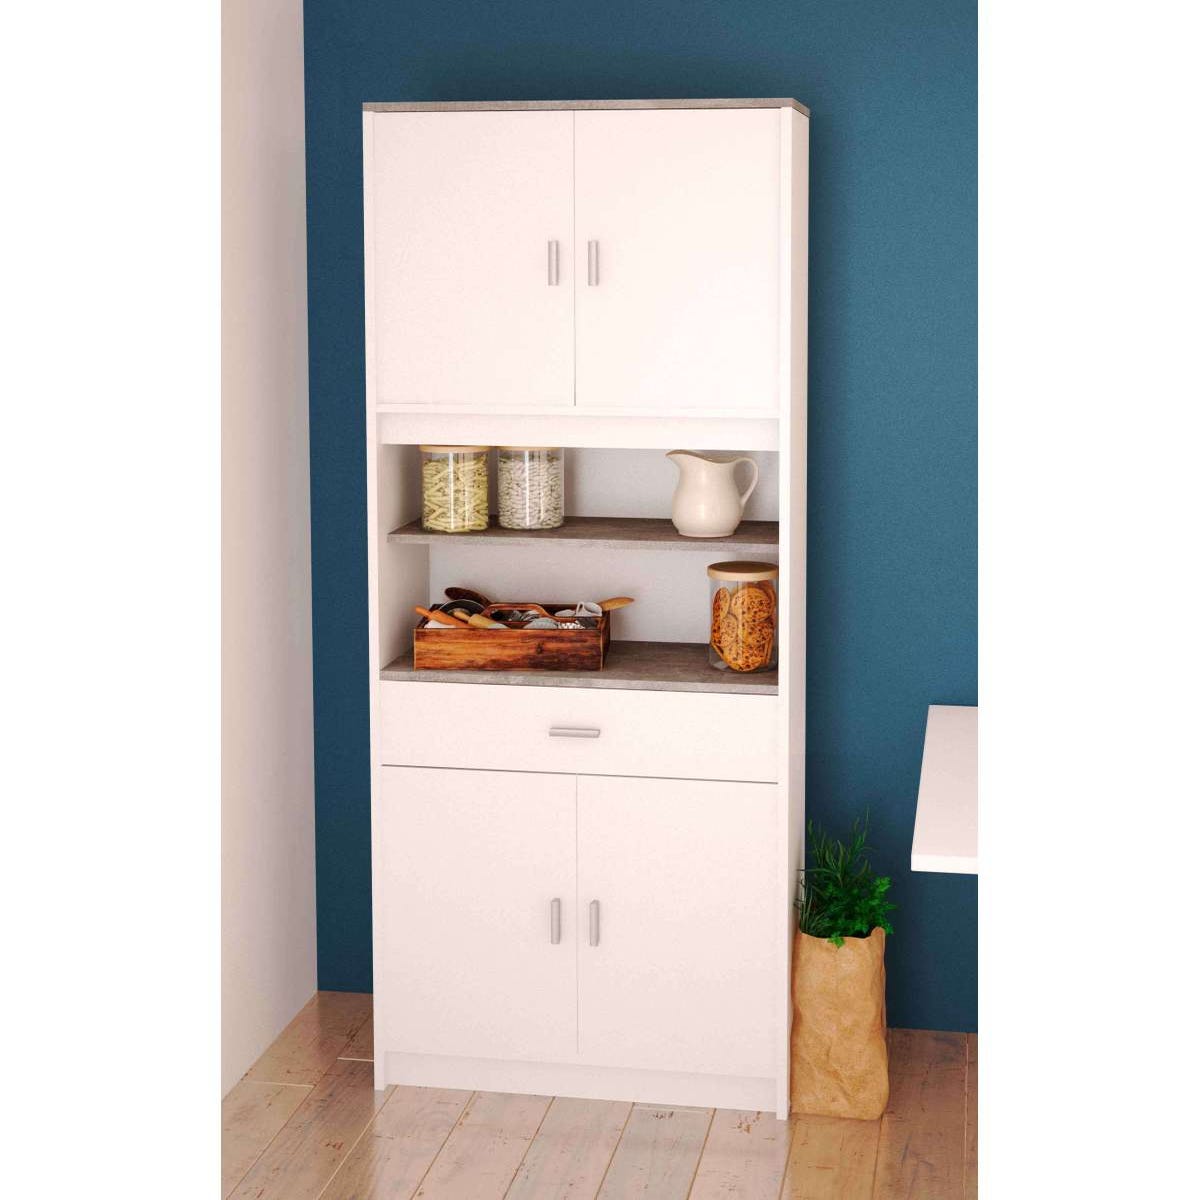 Alacena cocina alto KIRA blanco/roble 4 puertas + 1 cajón 186 x 72 x 40 cm